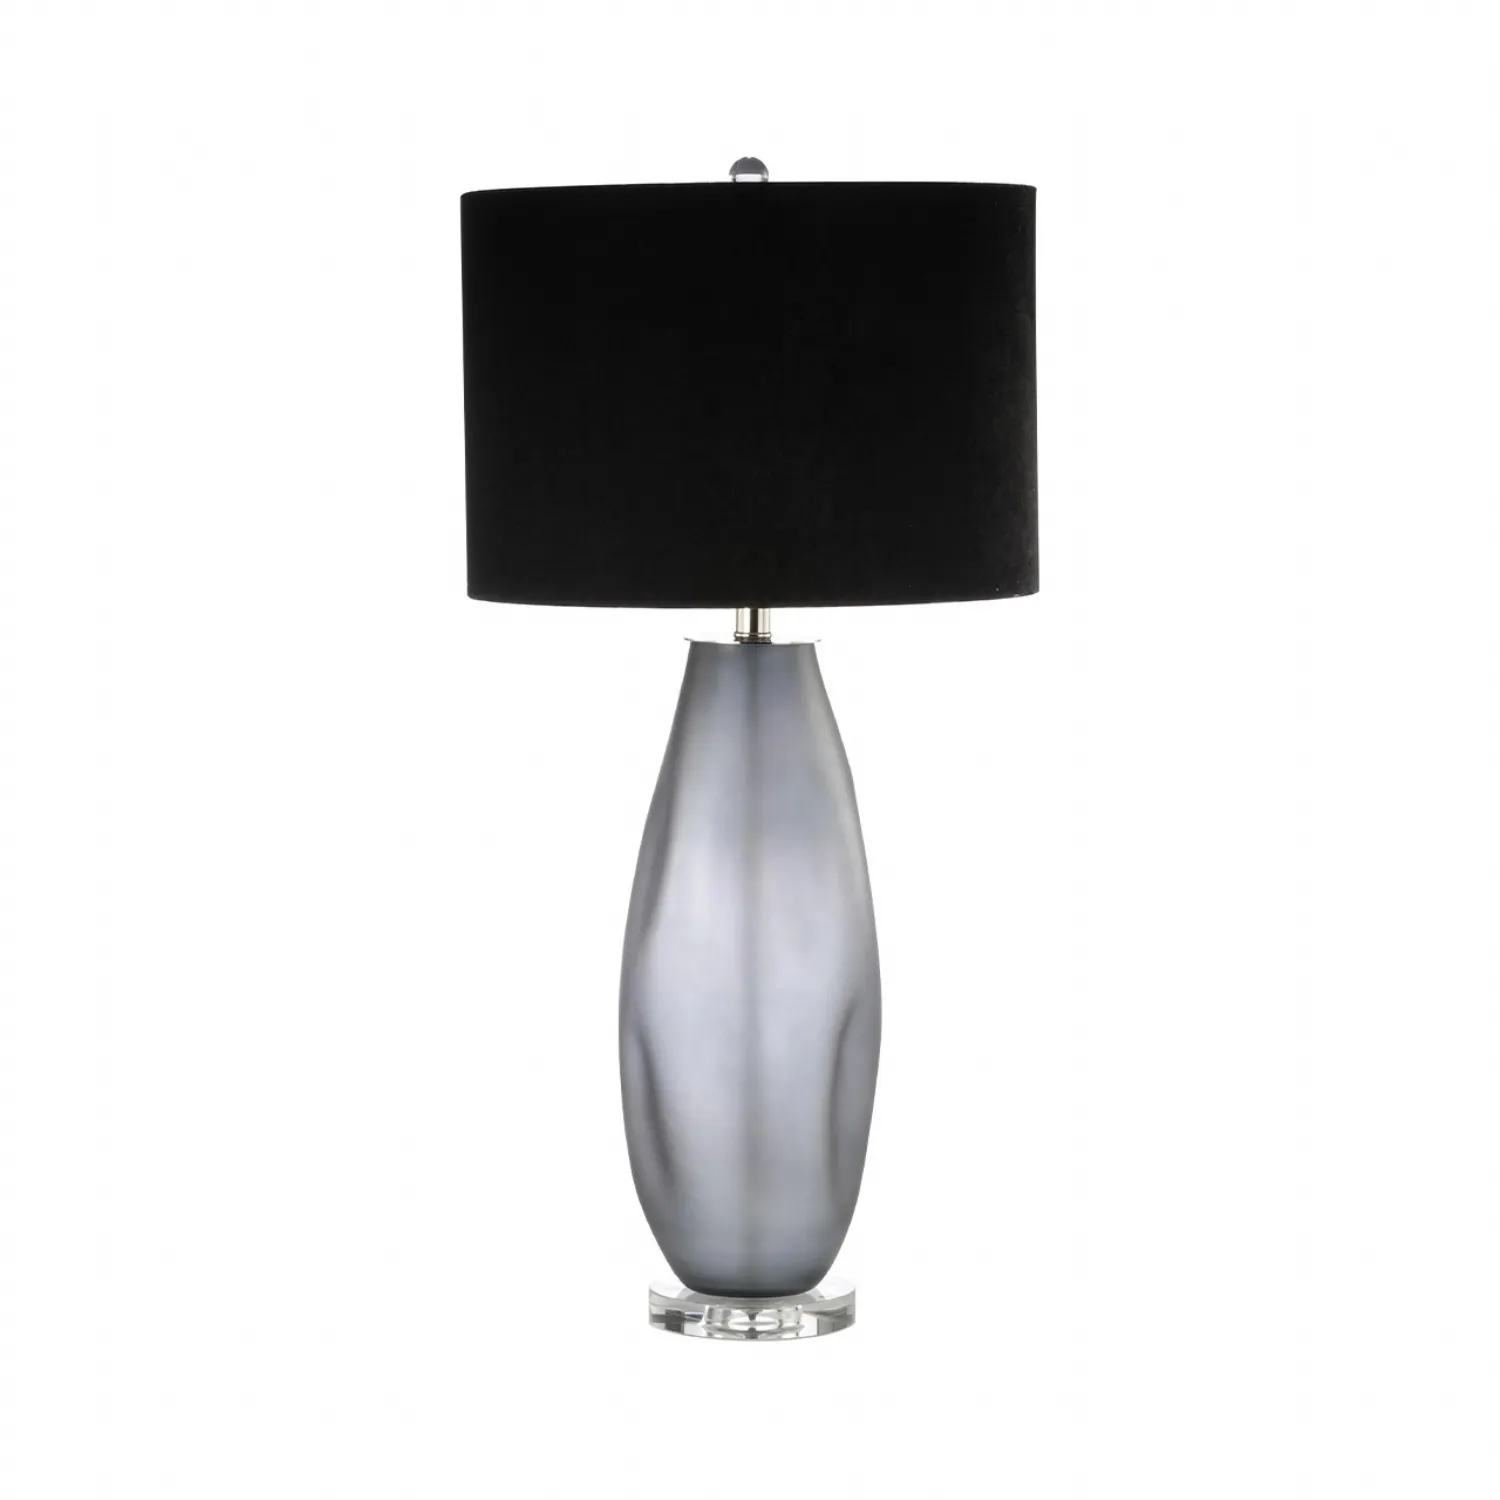 81. 3cm Smoke Glass Table Lamp With Black Velvet Shade